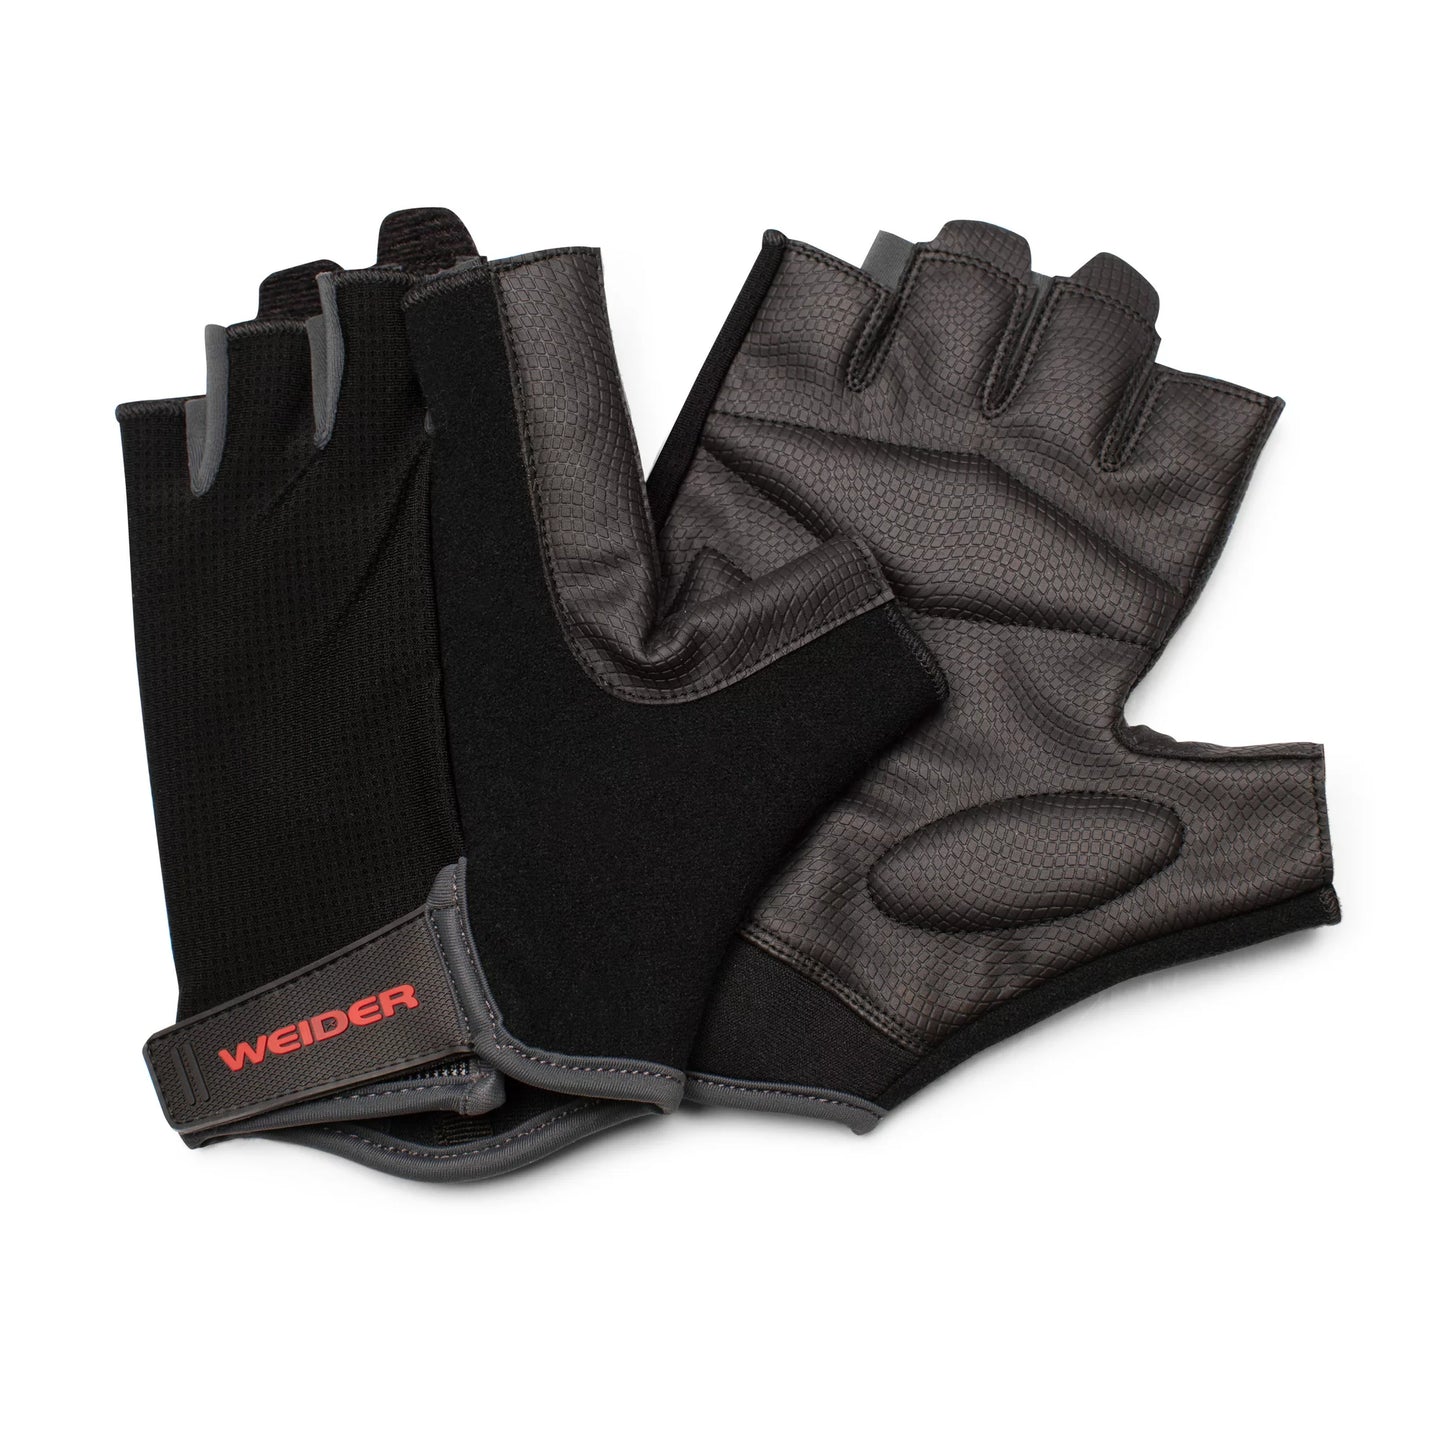 Weider - Weightlifting Gloves L/XL